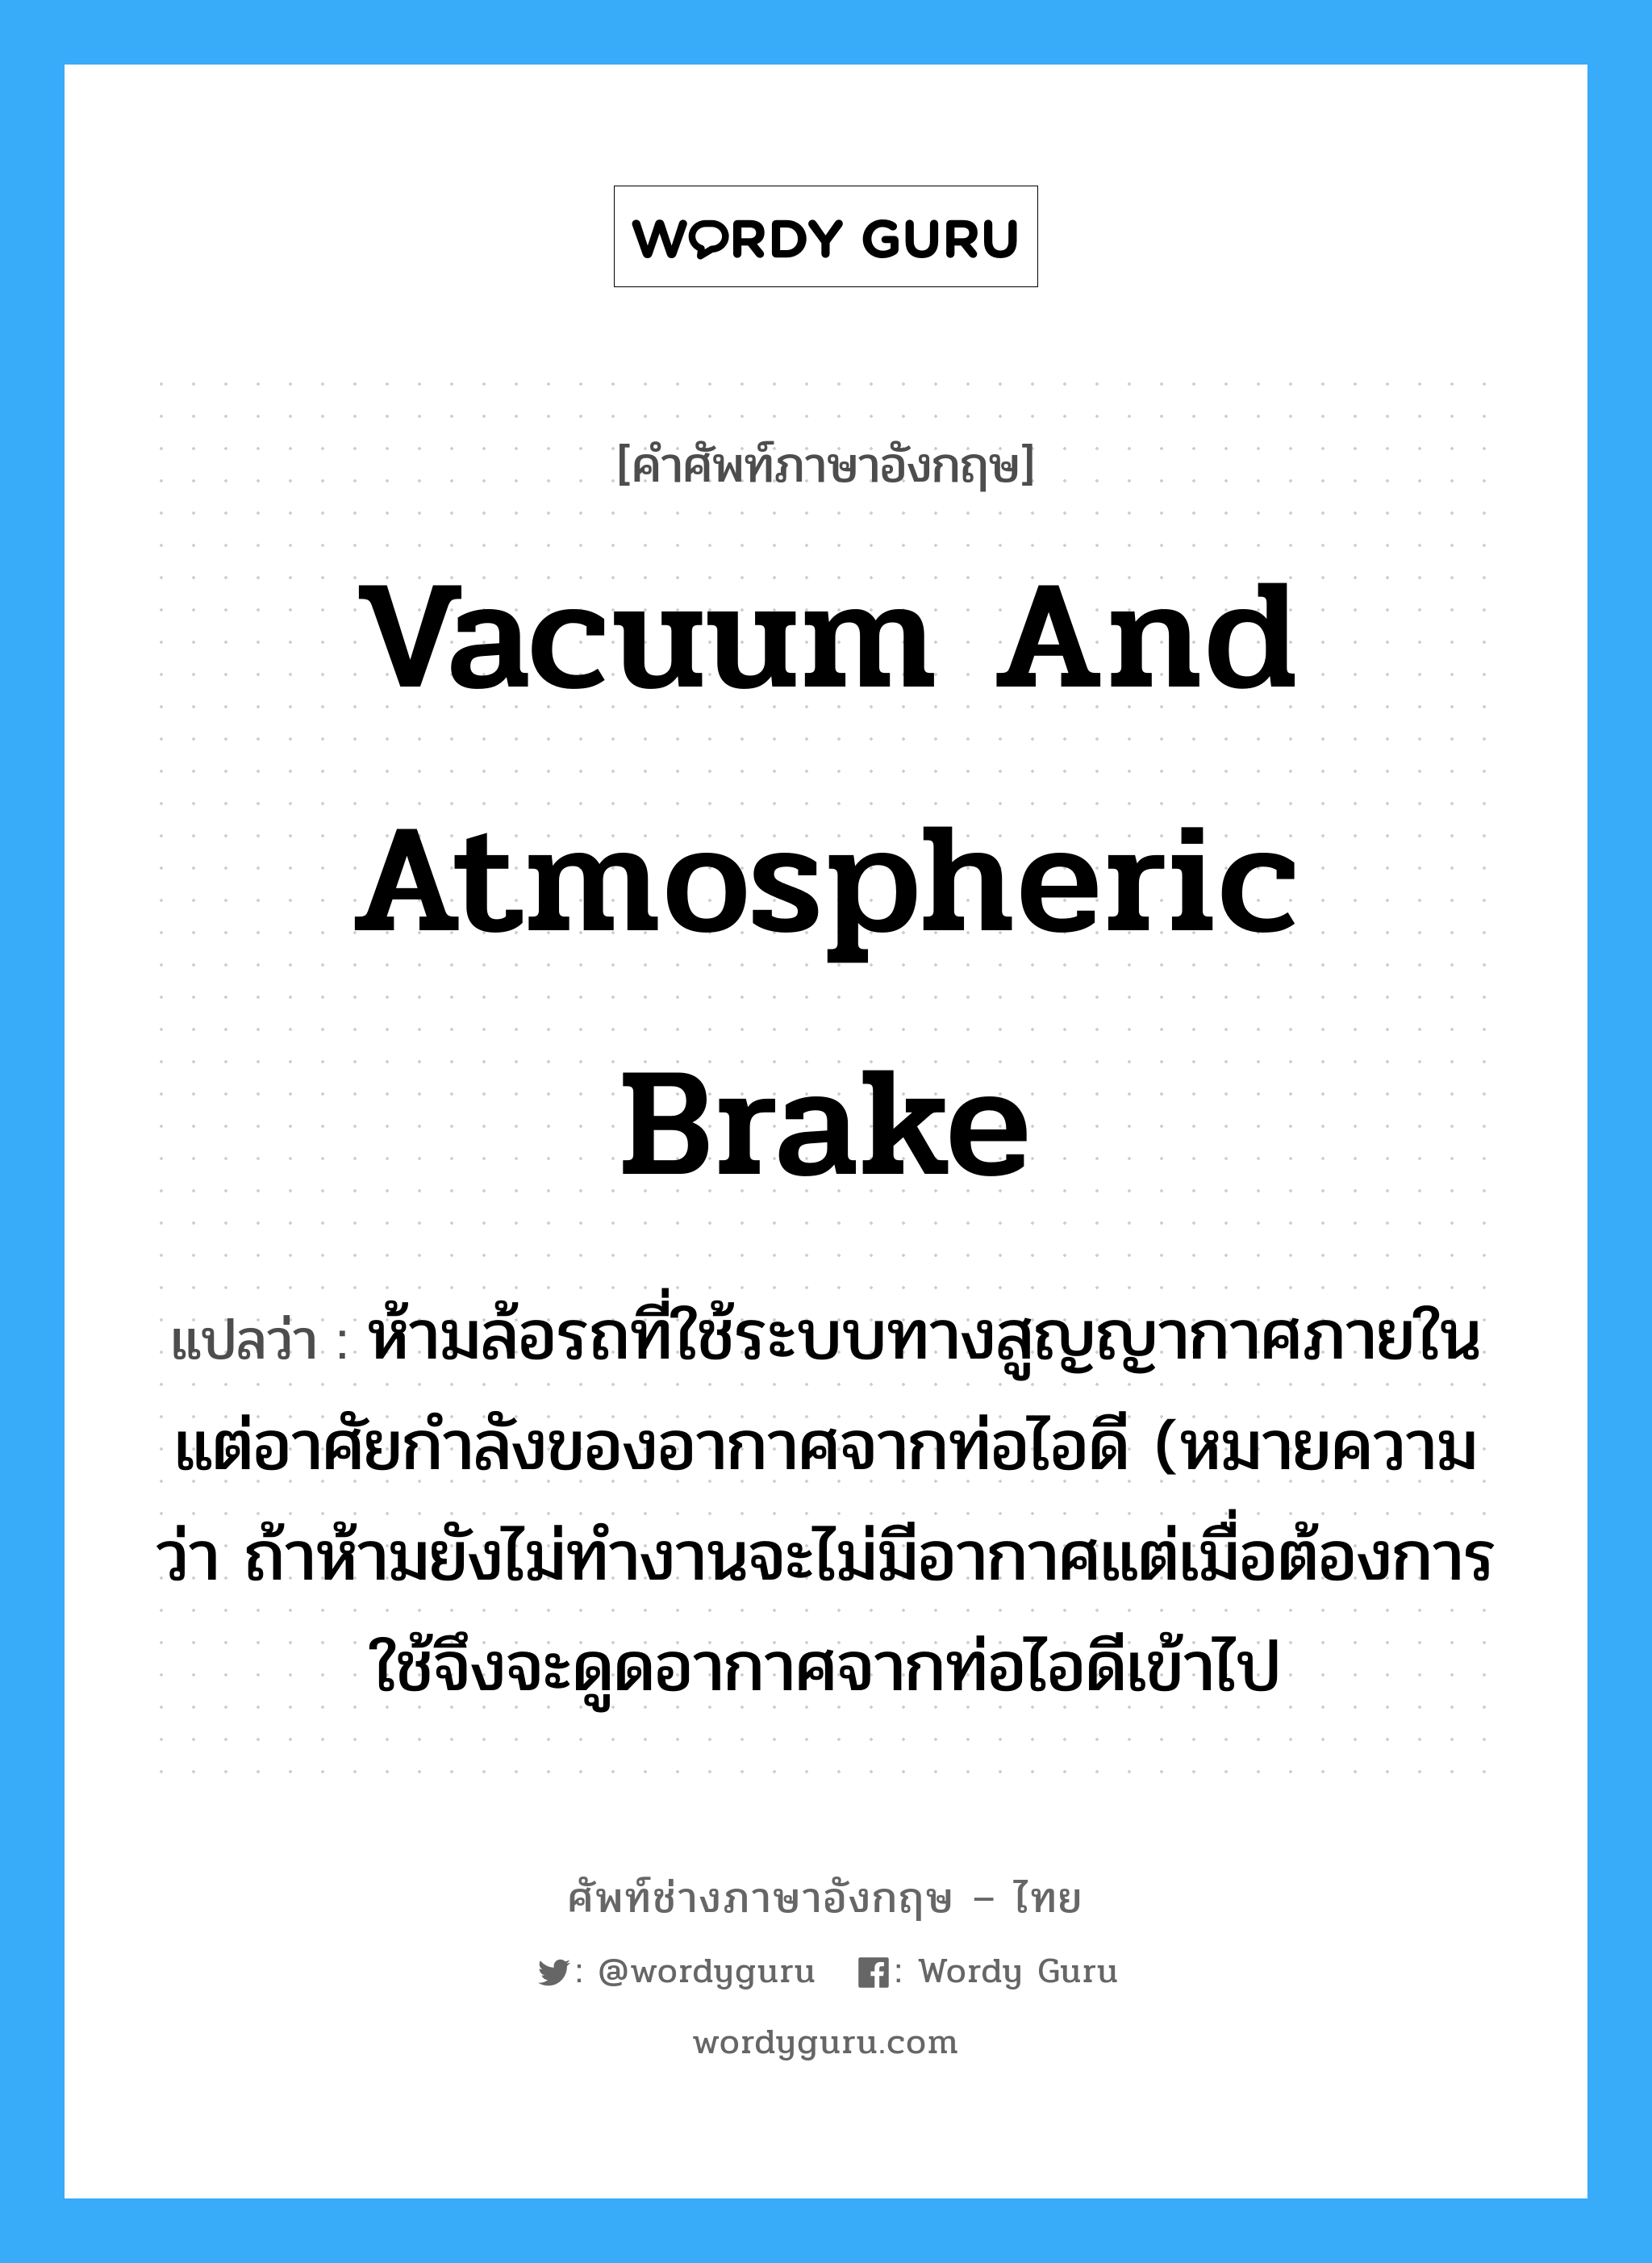 vacuum and atmospheric brake แปลว่า?, คำศัพท์ช่างภาษาอังกฤษ - ไทย vacuum and atmospheric brake คำศัพท์ภาษาอังกฤษ vacuum and atmospheric brake แปลว่า ห้ามล้อรถที่ใช้ระบบทางสูญญากาศภายใน แต่อาศัยกำลังของอากาศจากท่อไอดี (หมายความว่า ถ้าห้ามยังไม่ทำงานจะไม่มีอากาศแต่เมื่อต้องการใช้จึงจะดูดอากาศจากท่อไอดีเข้าไป